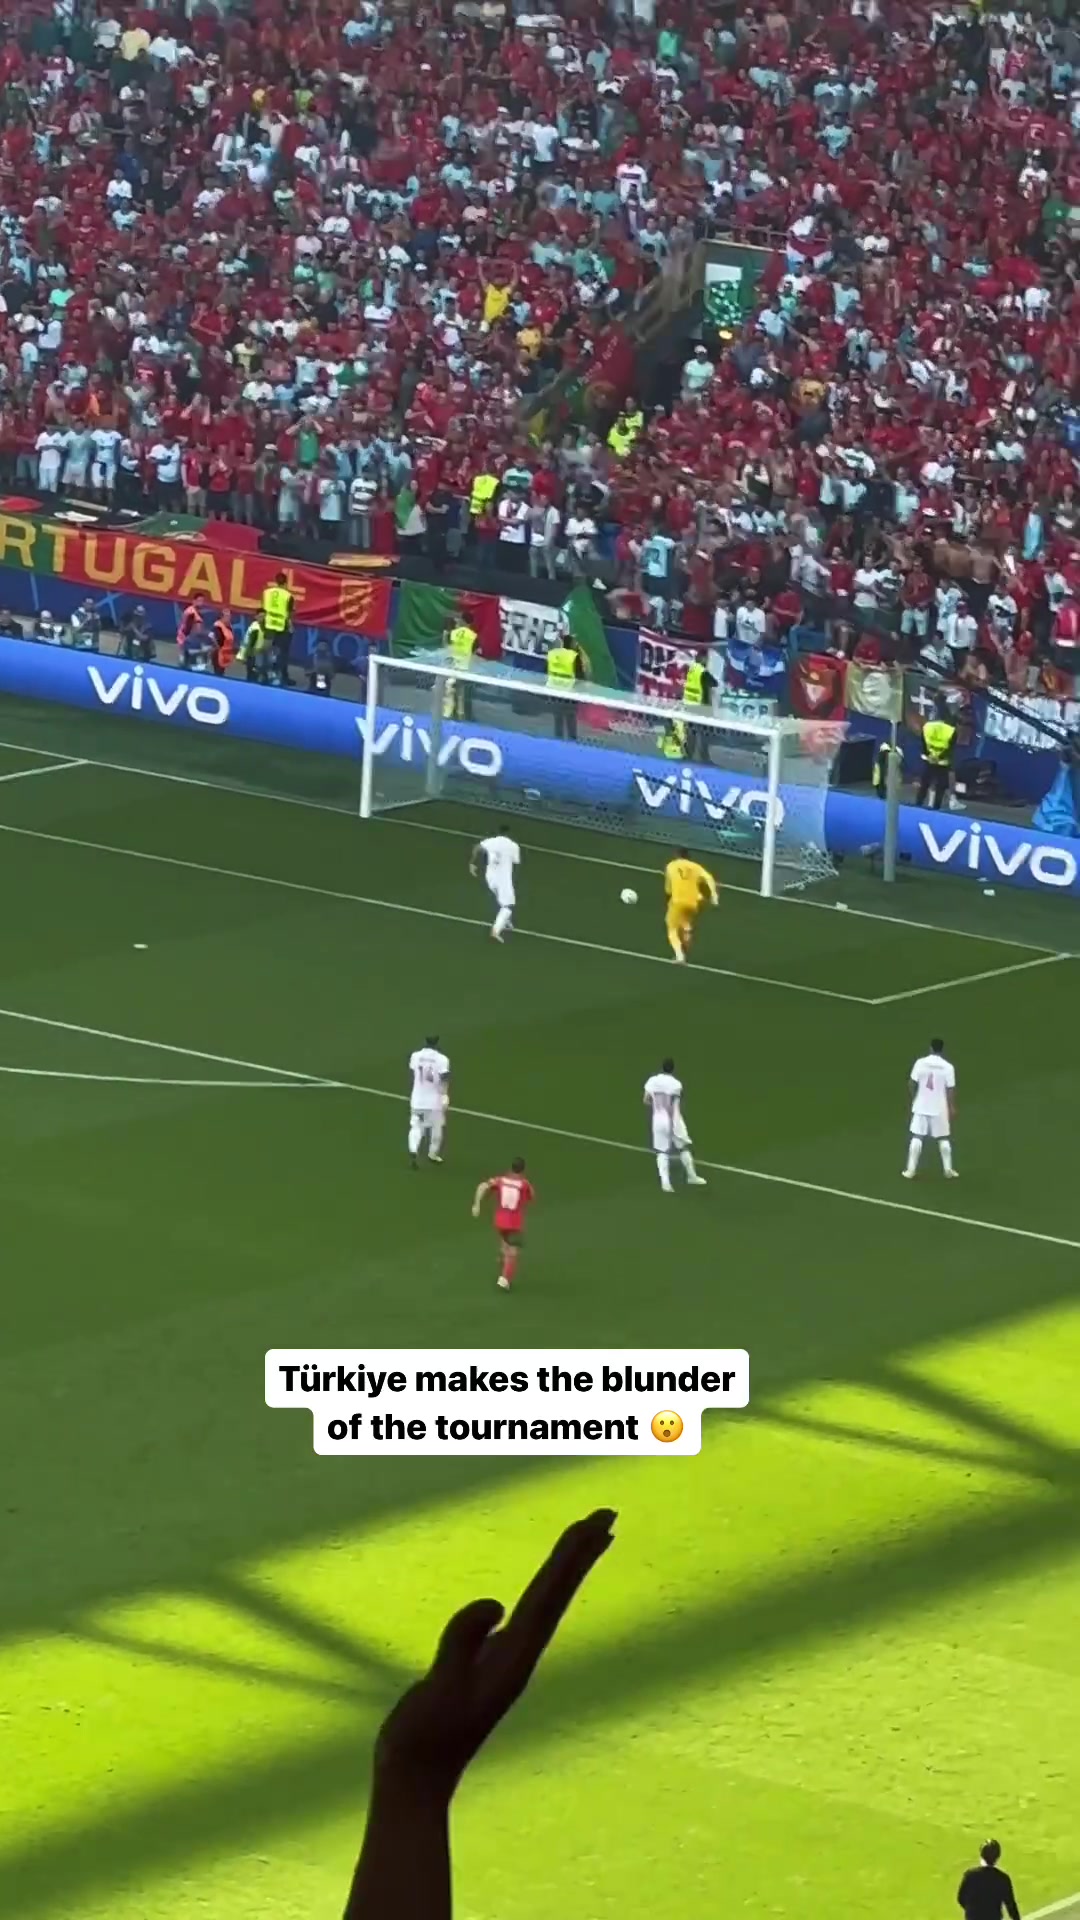 到底发生了什么球迷视角看土耳其超级巨大的失误